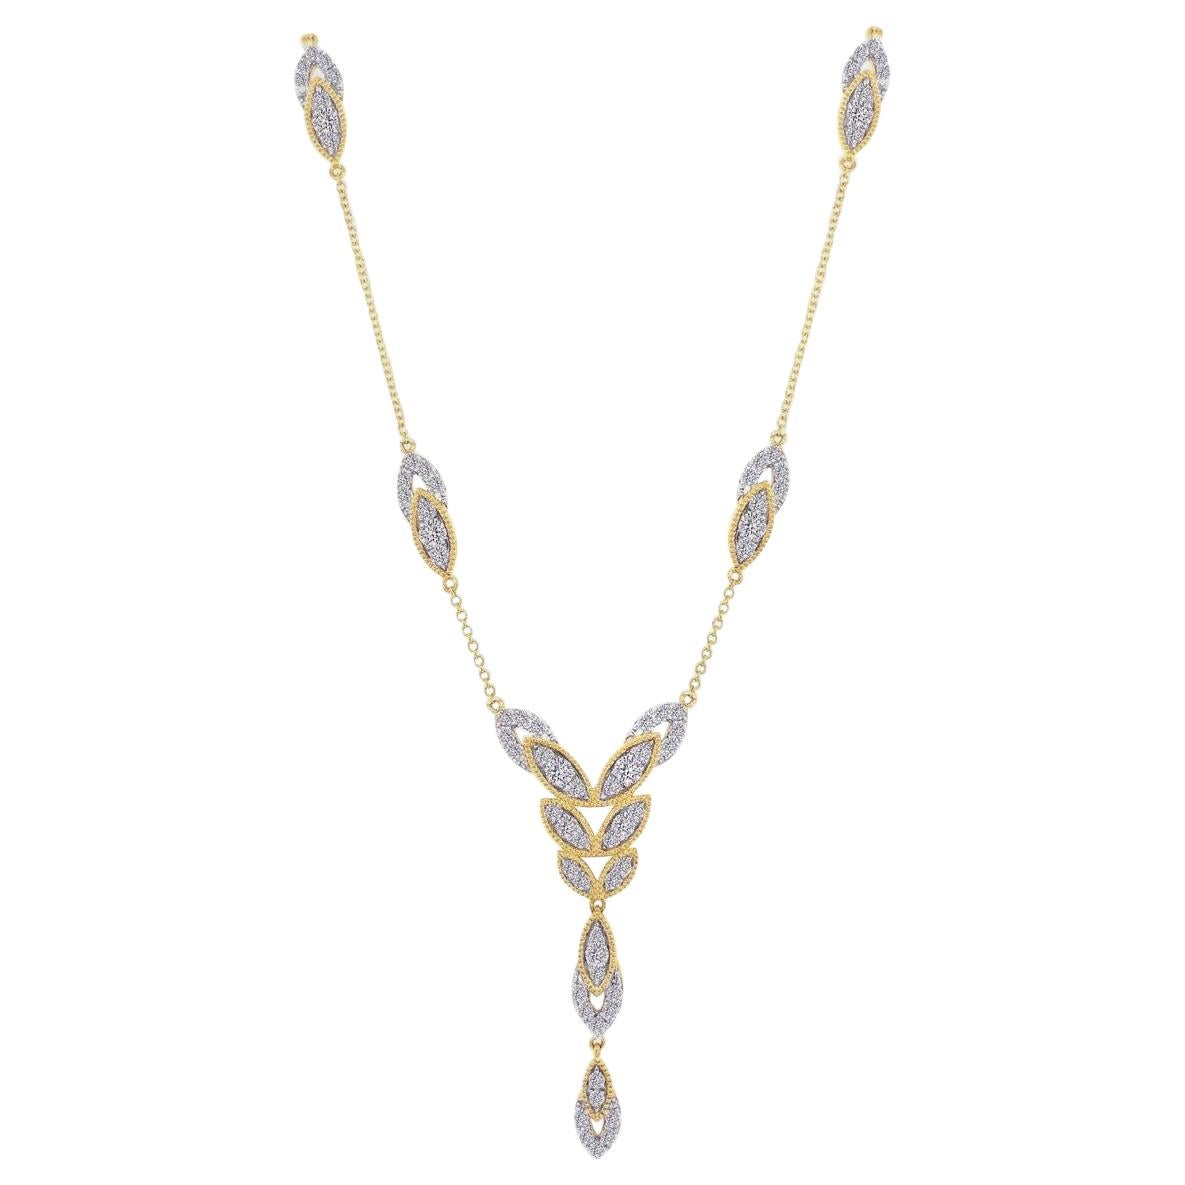 Long collier en or 18 carats et diamants en forme de fleur